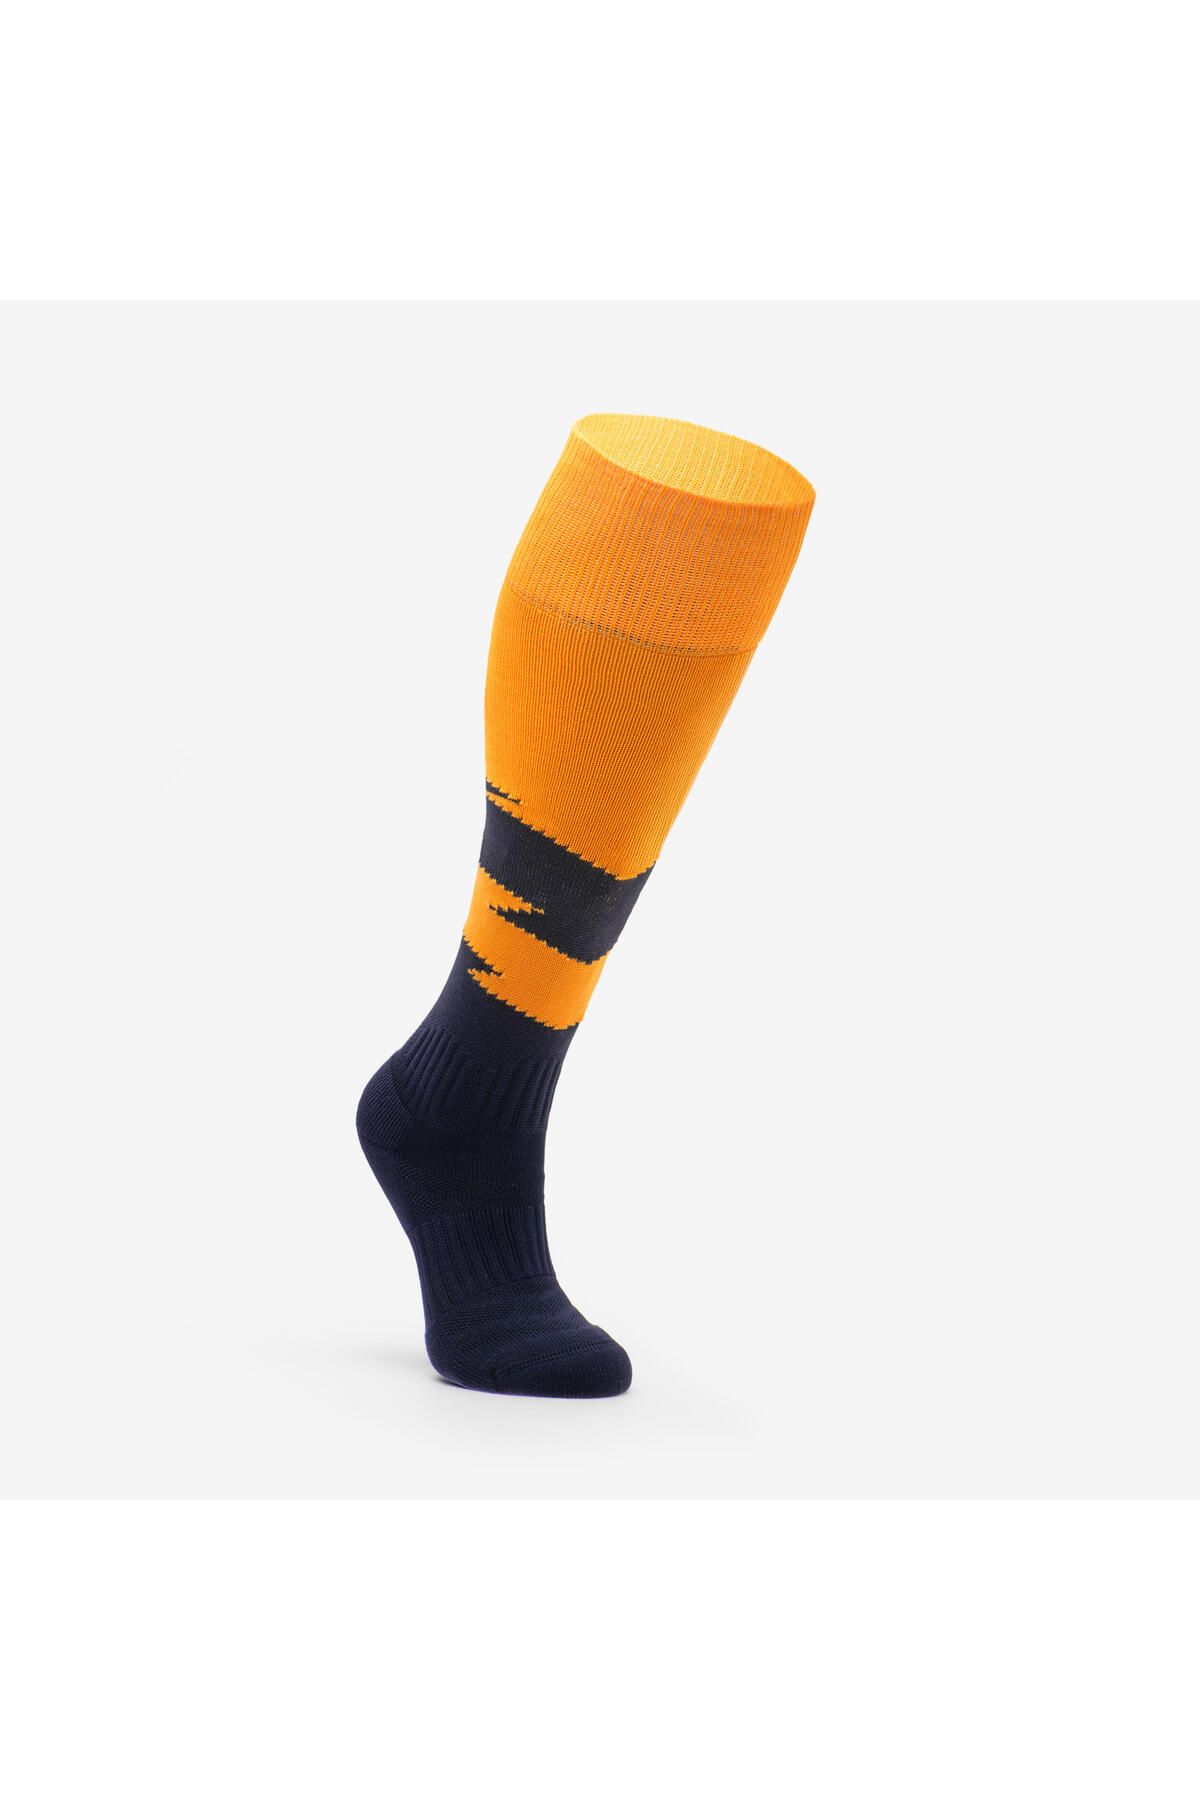 Decathlon Unisex Çocuk Futbol Çorabı Nefes Alan Teri Dışarı Atar Dayanıklı Ayağı Destekleyen Havalandırmalı